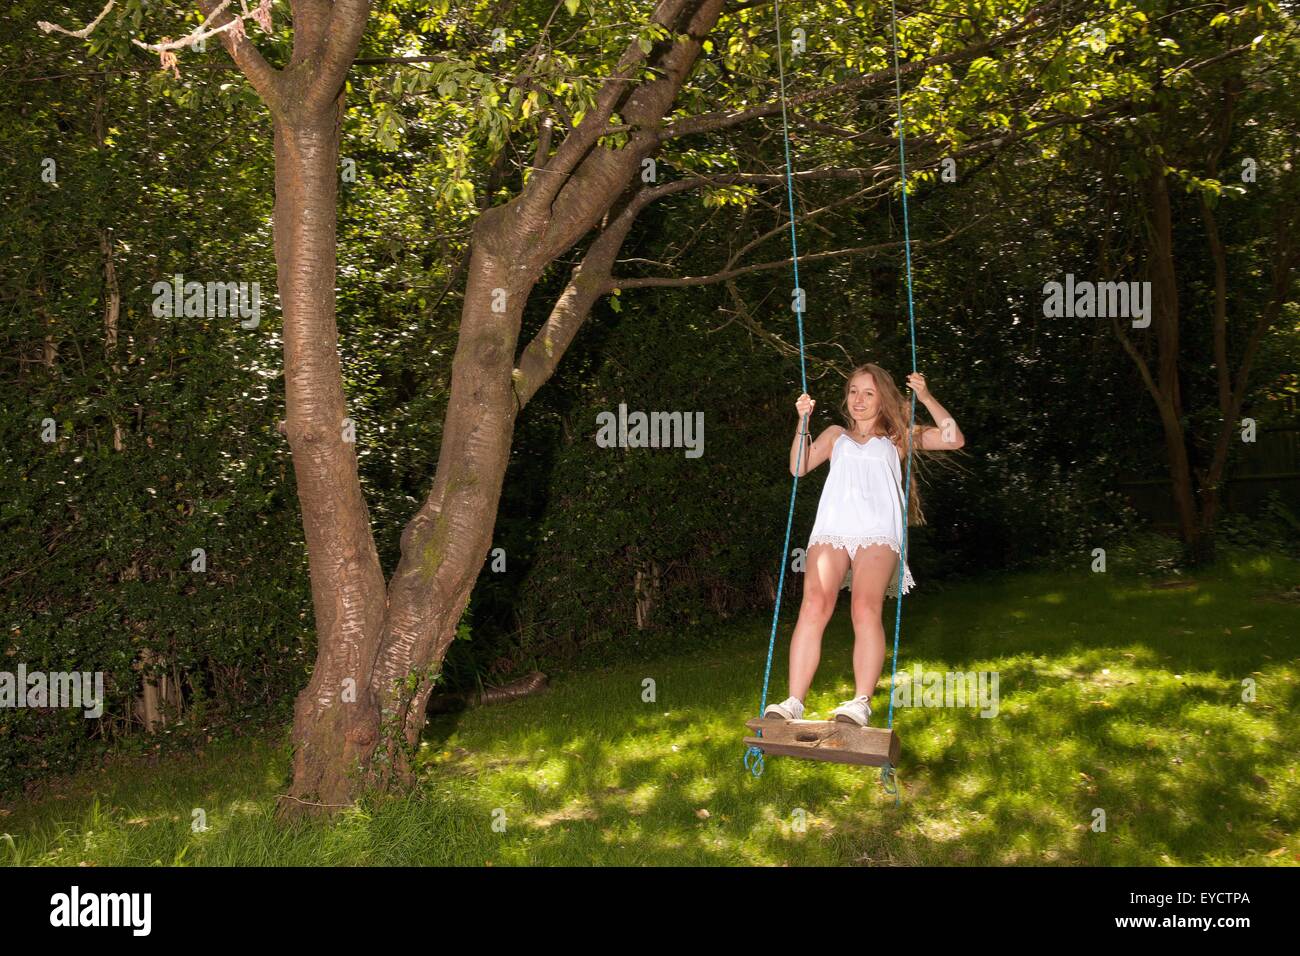 Adolescente se balanceen en giro de árbol Foto de stock